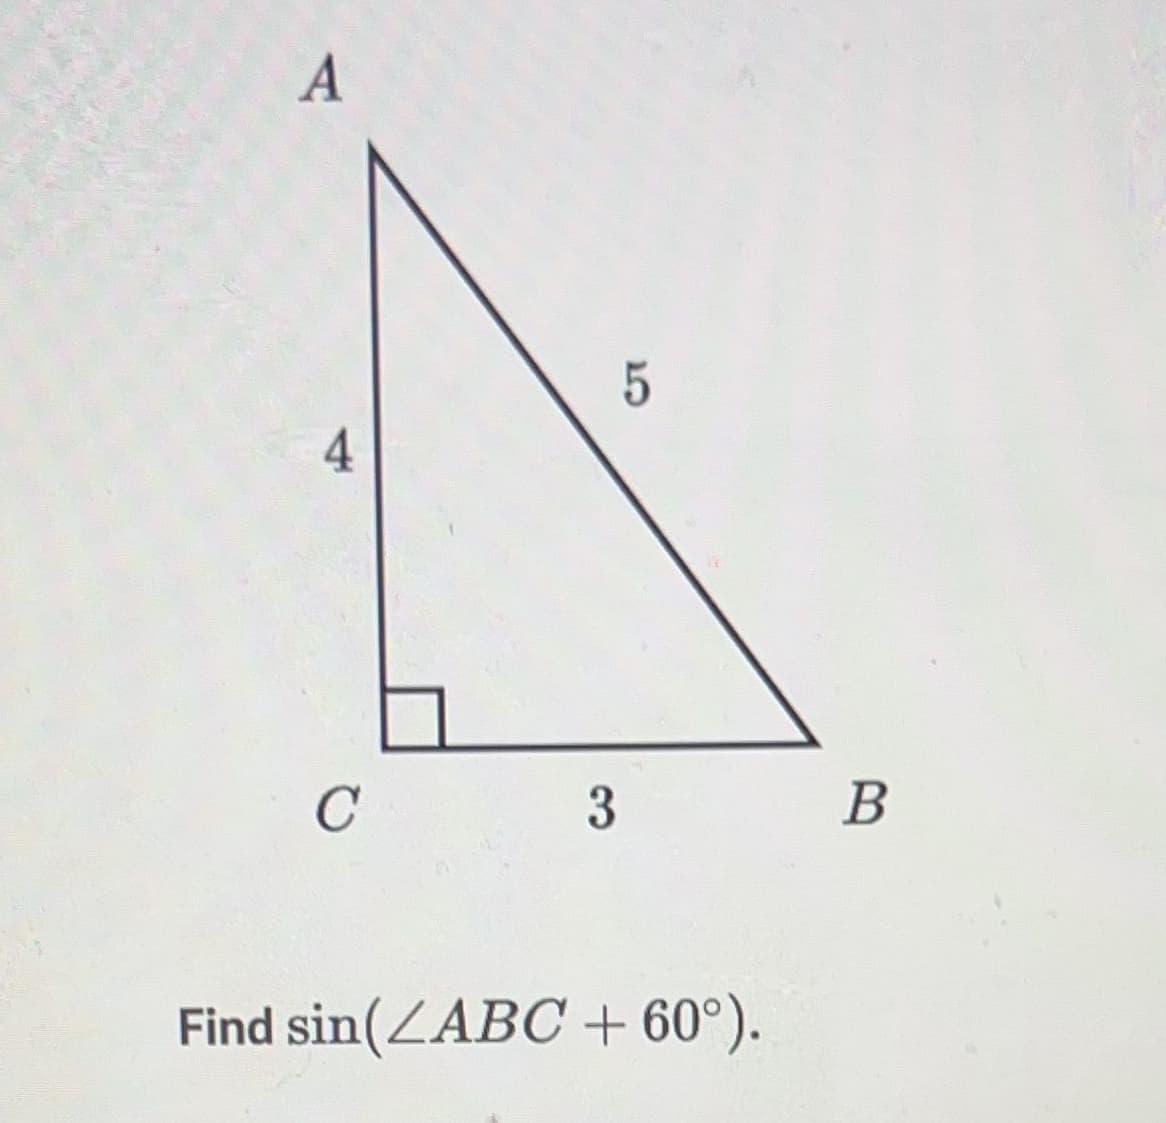 A
4
с
3
5
Find sin(ZABC + 60°).
B